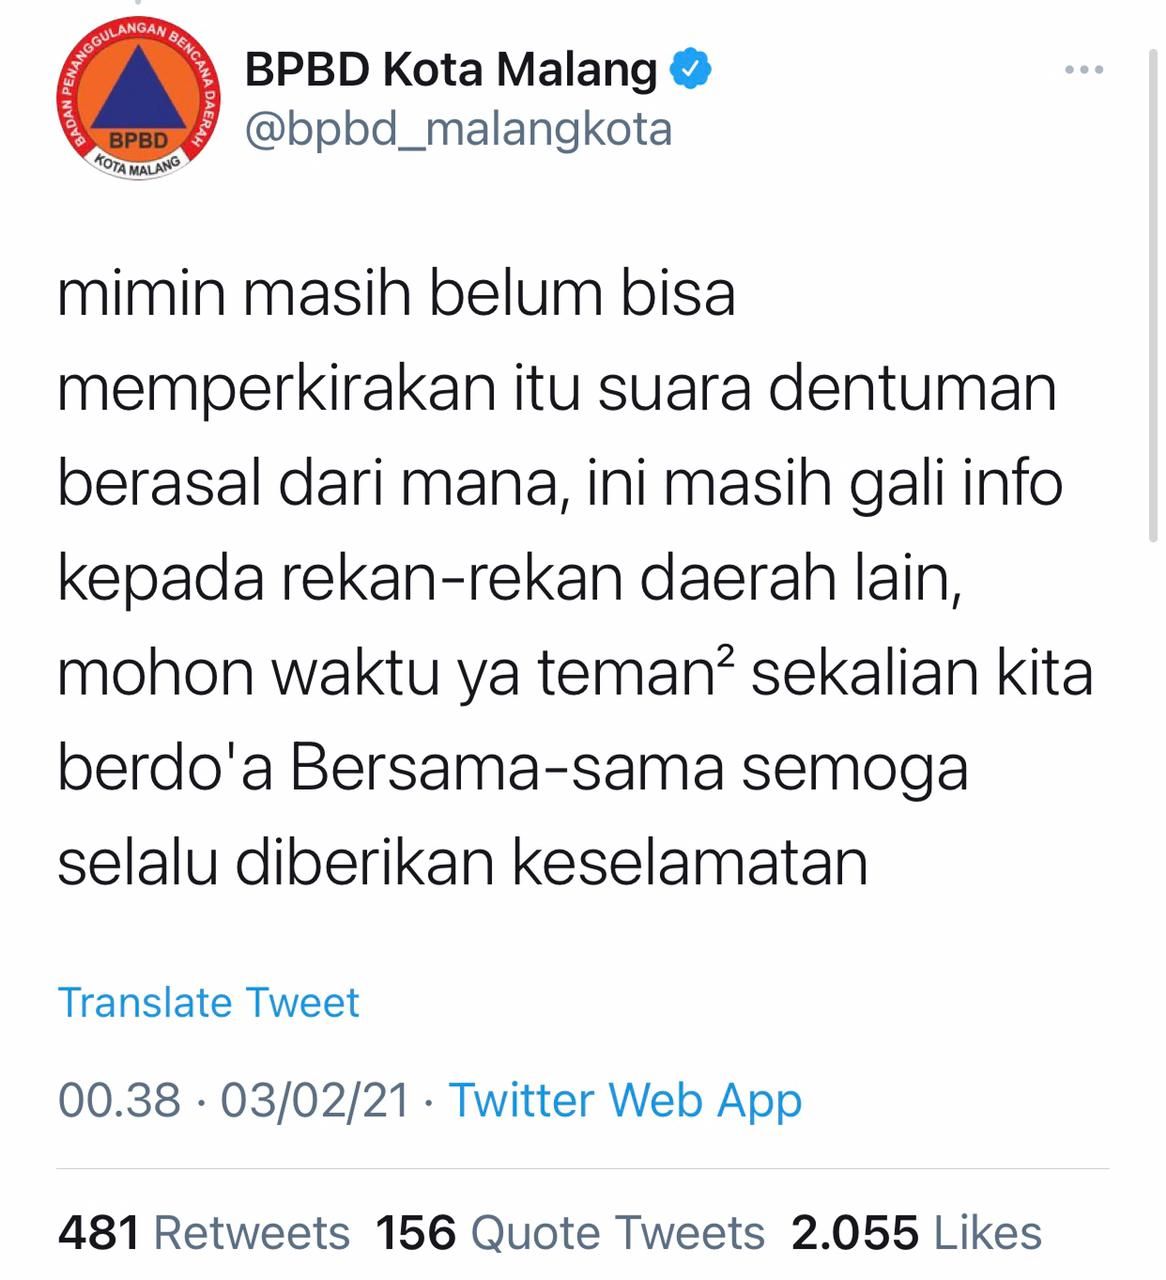 Postingan BPBD Kota Malang terkait suara dentuman.